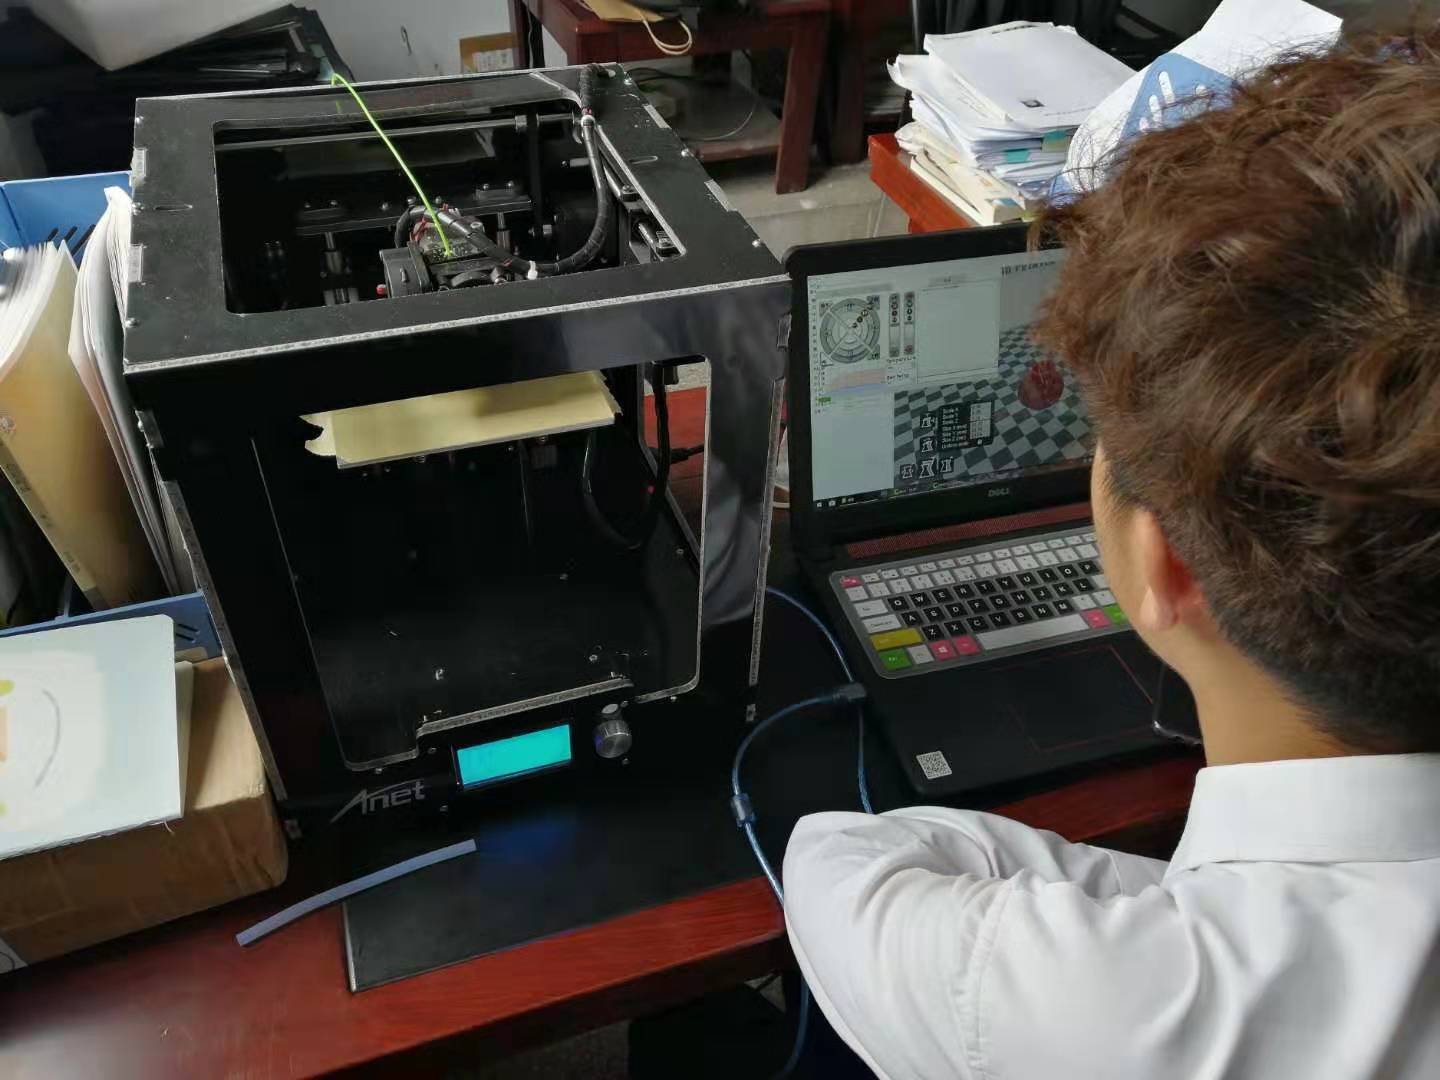 金星桌面级3D打印机图片及价格介绍 - EASYTHREED 3D Printer